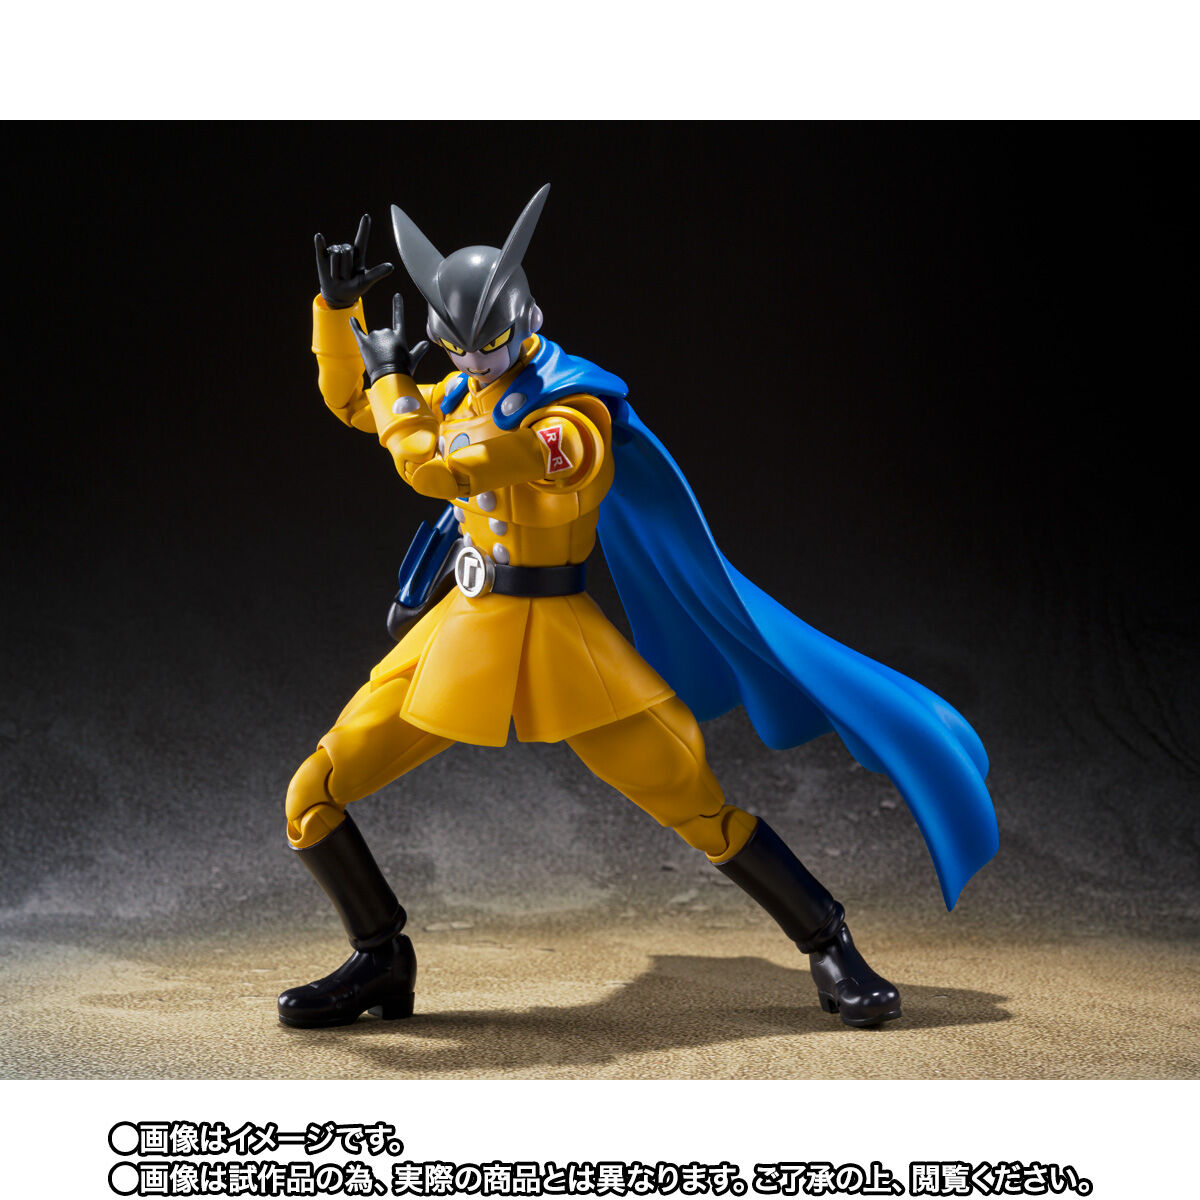 【限定販売】S.H.Figuarts『ガンマ1号』ドラゴンボール超 スーパーヒーロー 可動フィギュア-013